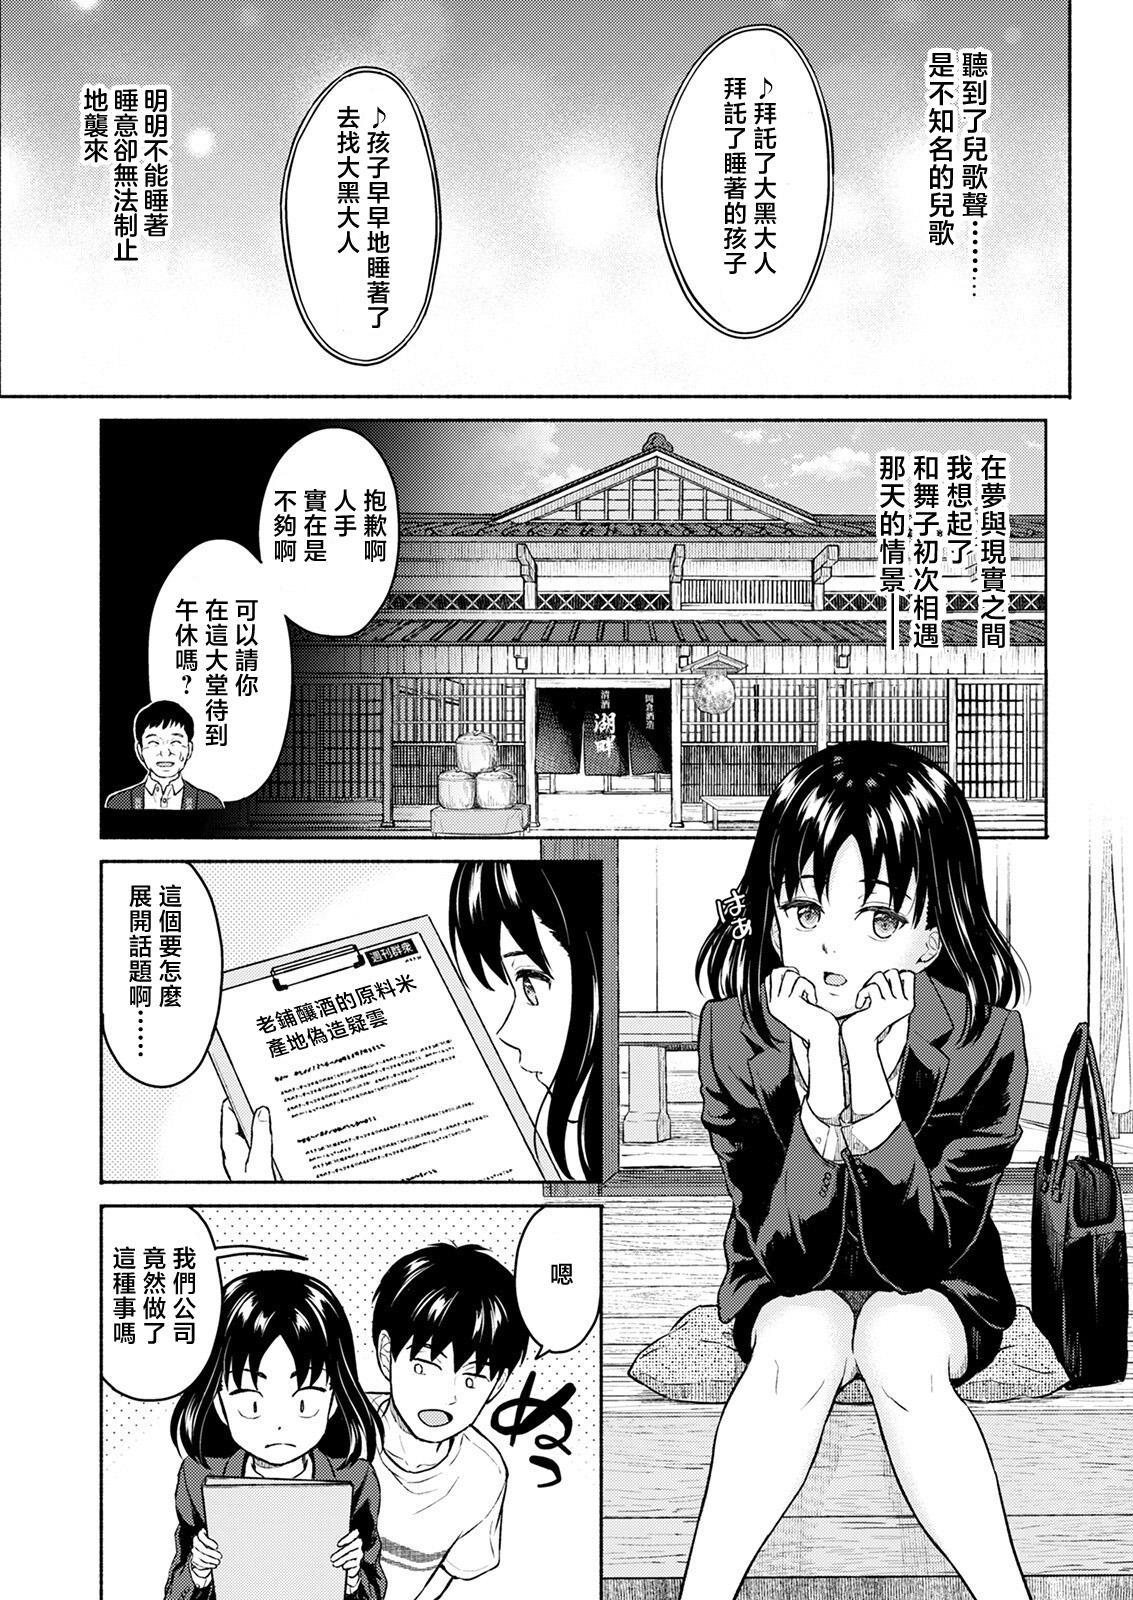 Foreplay Marude Rokugatsu no Kohan o Fuku Kaze no you ni Zenpen Jock - Page 5